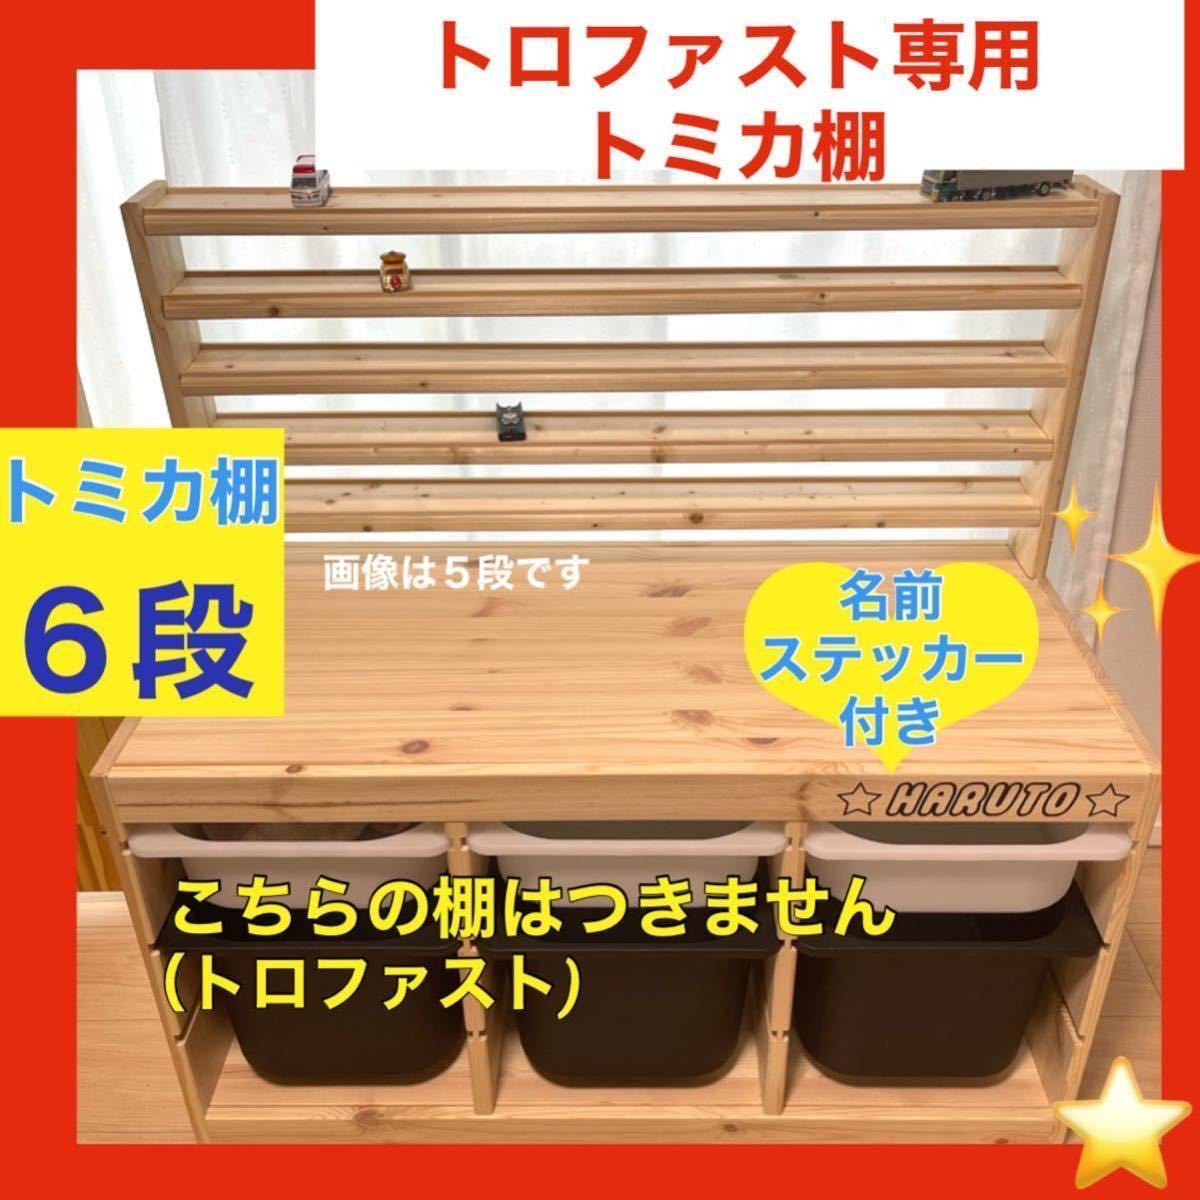 トロファスト専用トミカ棚(6段) トミカ収納棚 ミニカー IKEA イケア